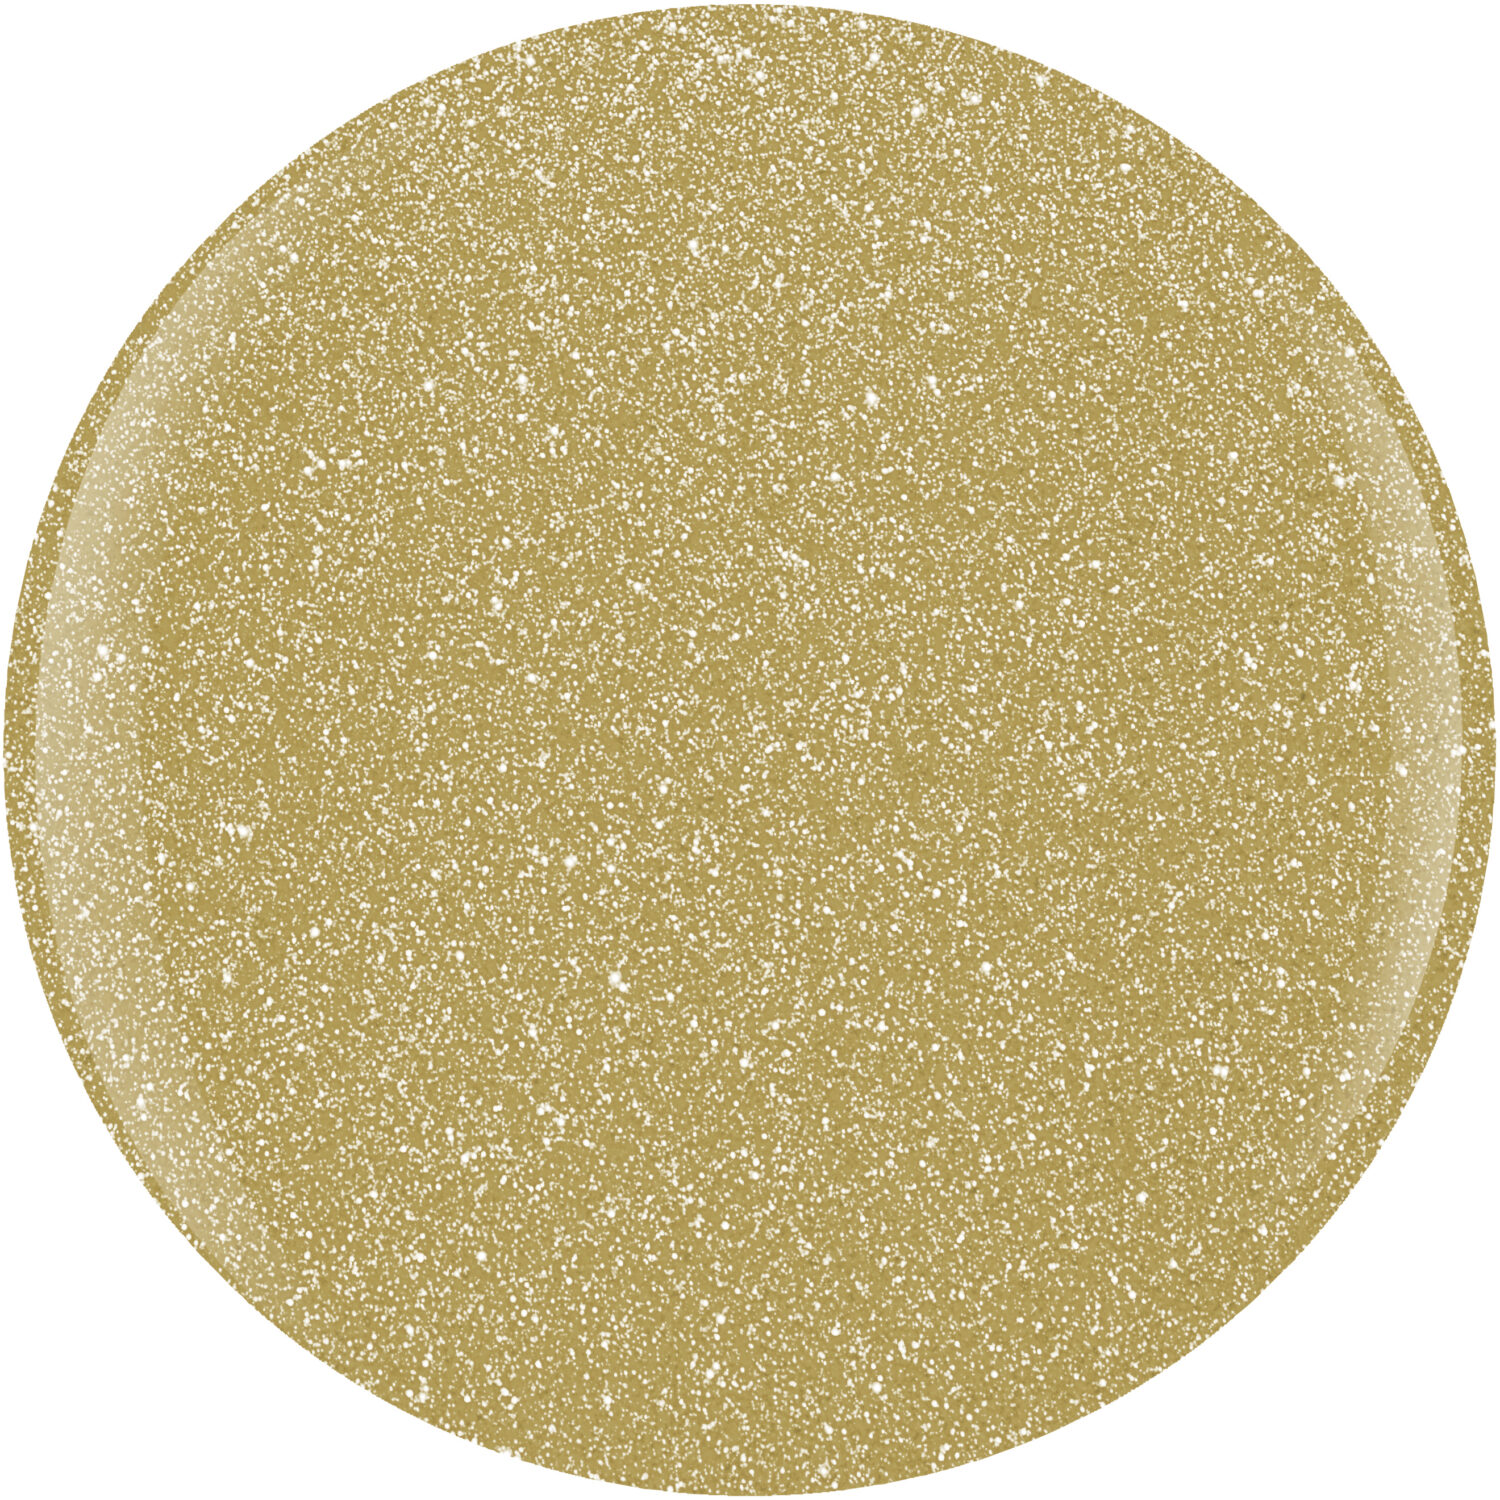 Gelish Flash Glam Star Quality Glitter Gel Polish, 0.5 fl oz.